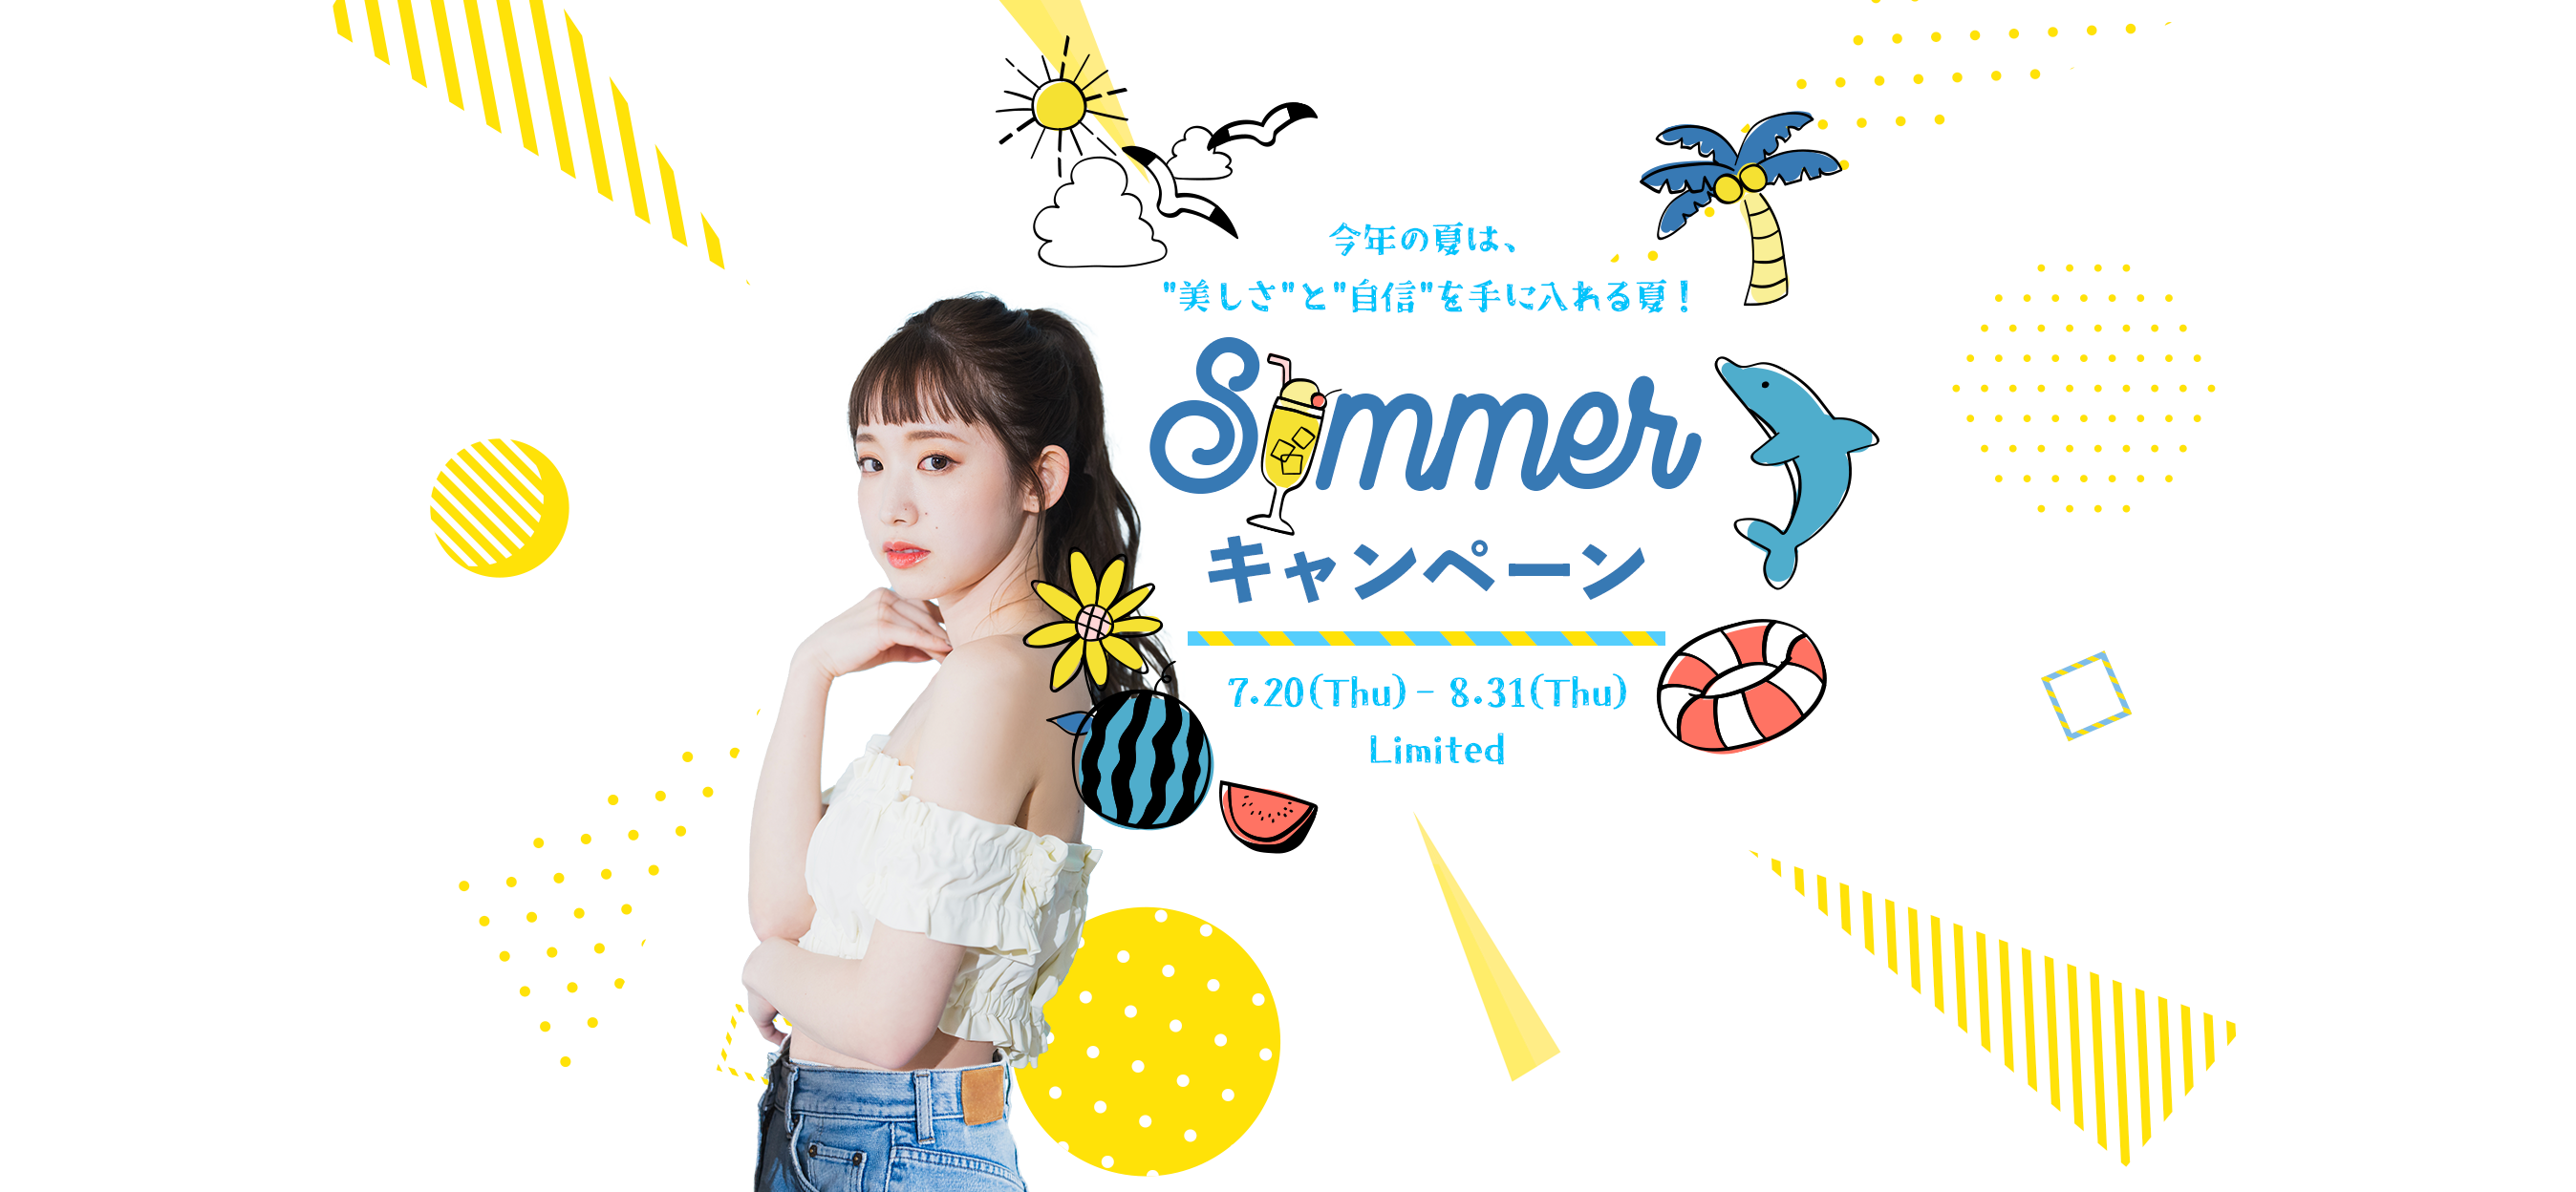 今年の夏は、「美しさ」と「自信」を手に入れる夏！ Summerキャンペーン 7.20(Thu)-8.31(Thu)Limited